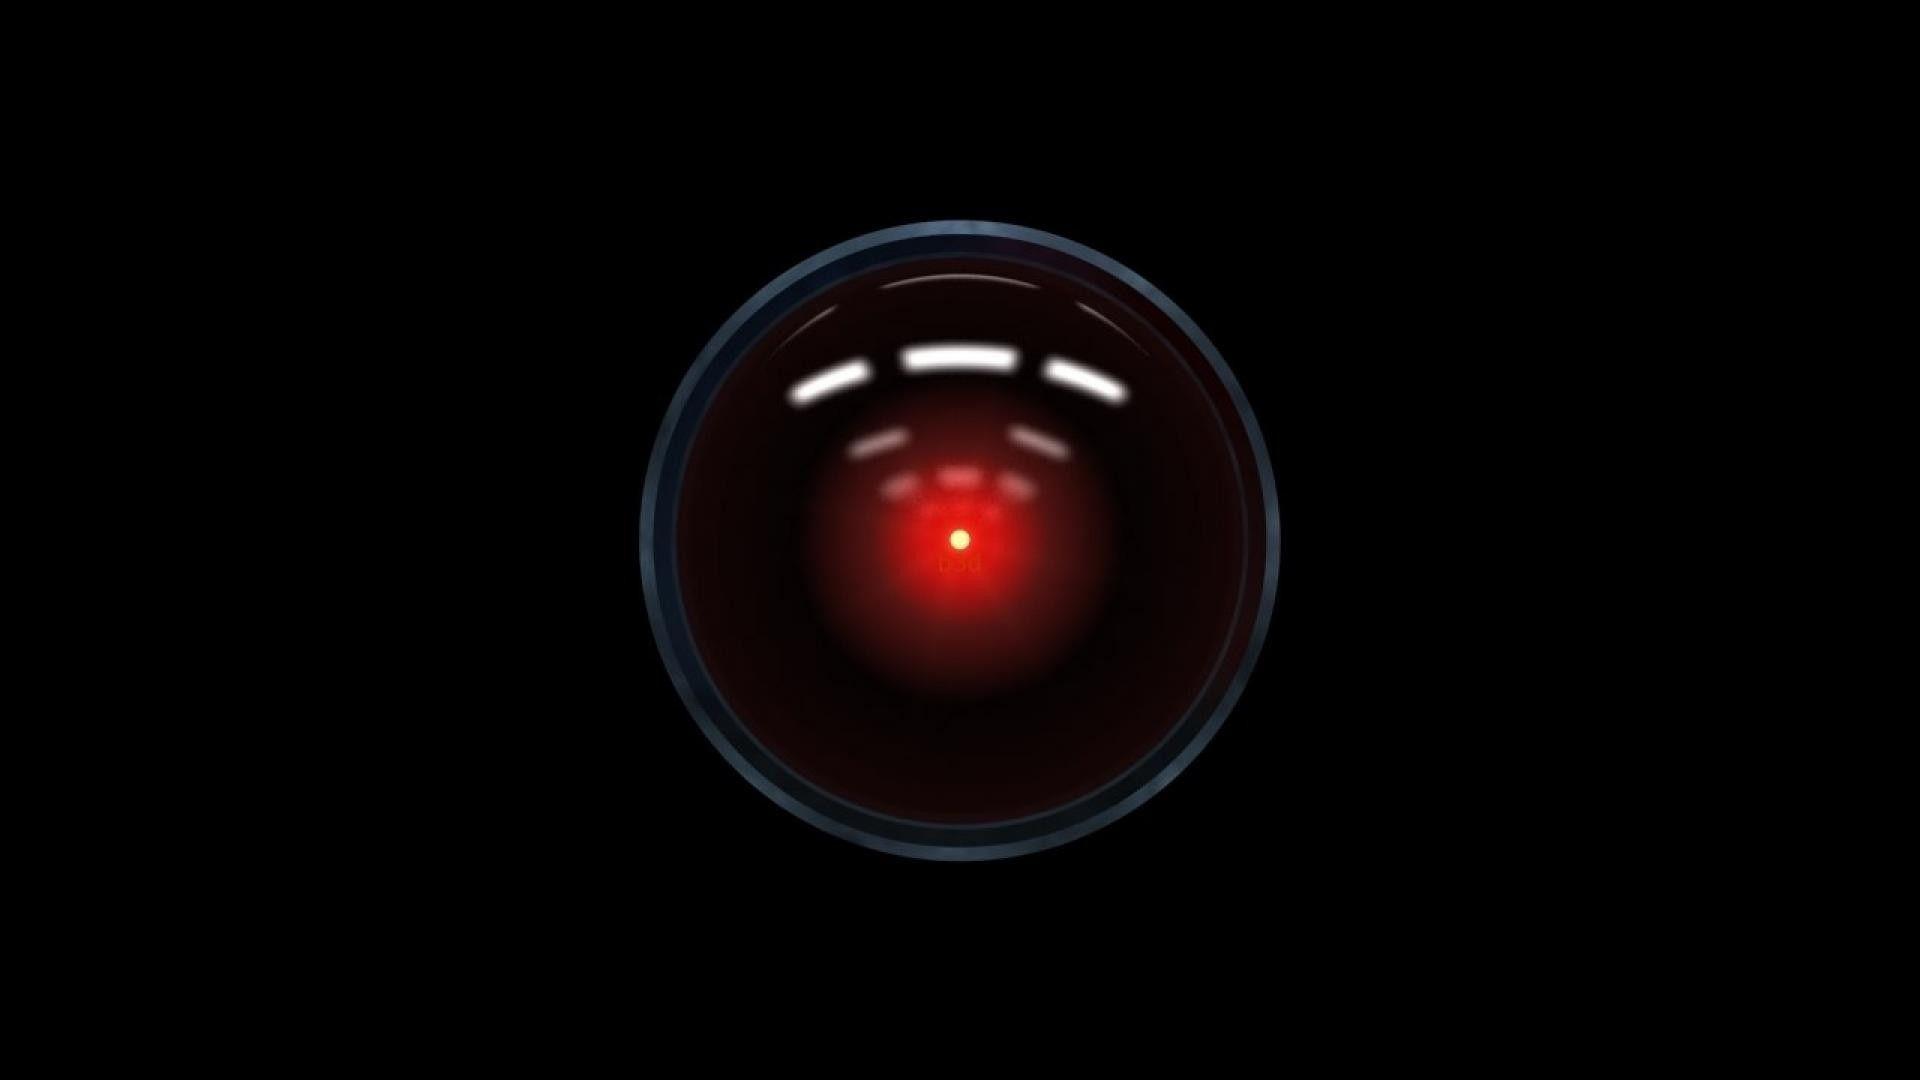 Hình nền HAL 9000 miễn phí: Chọn tải hình nền độc đáo và miễn phí với HAL 9000 cho máy tính của bạn. Khơi gợi sự sáng tạo và tăng động lực cho người xem.